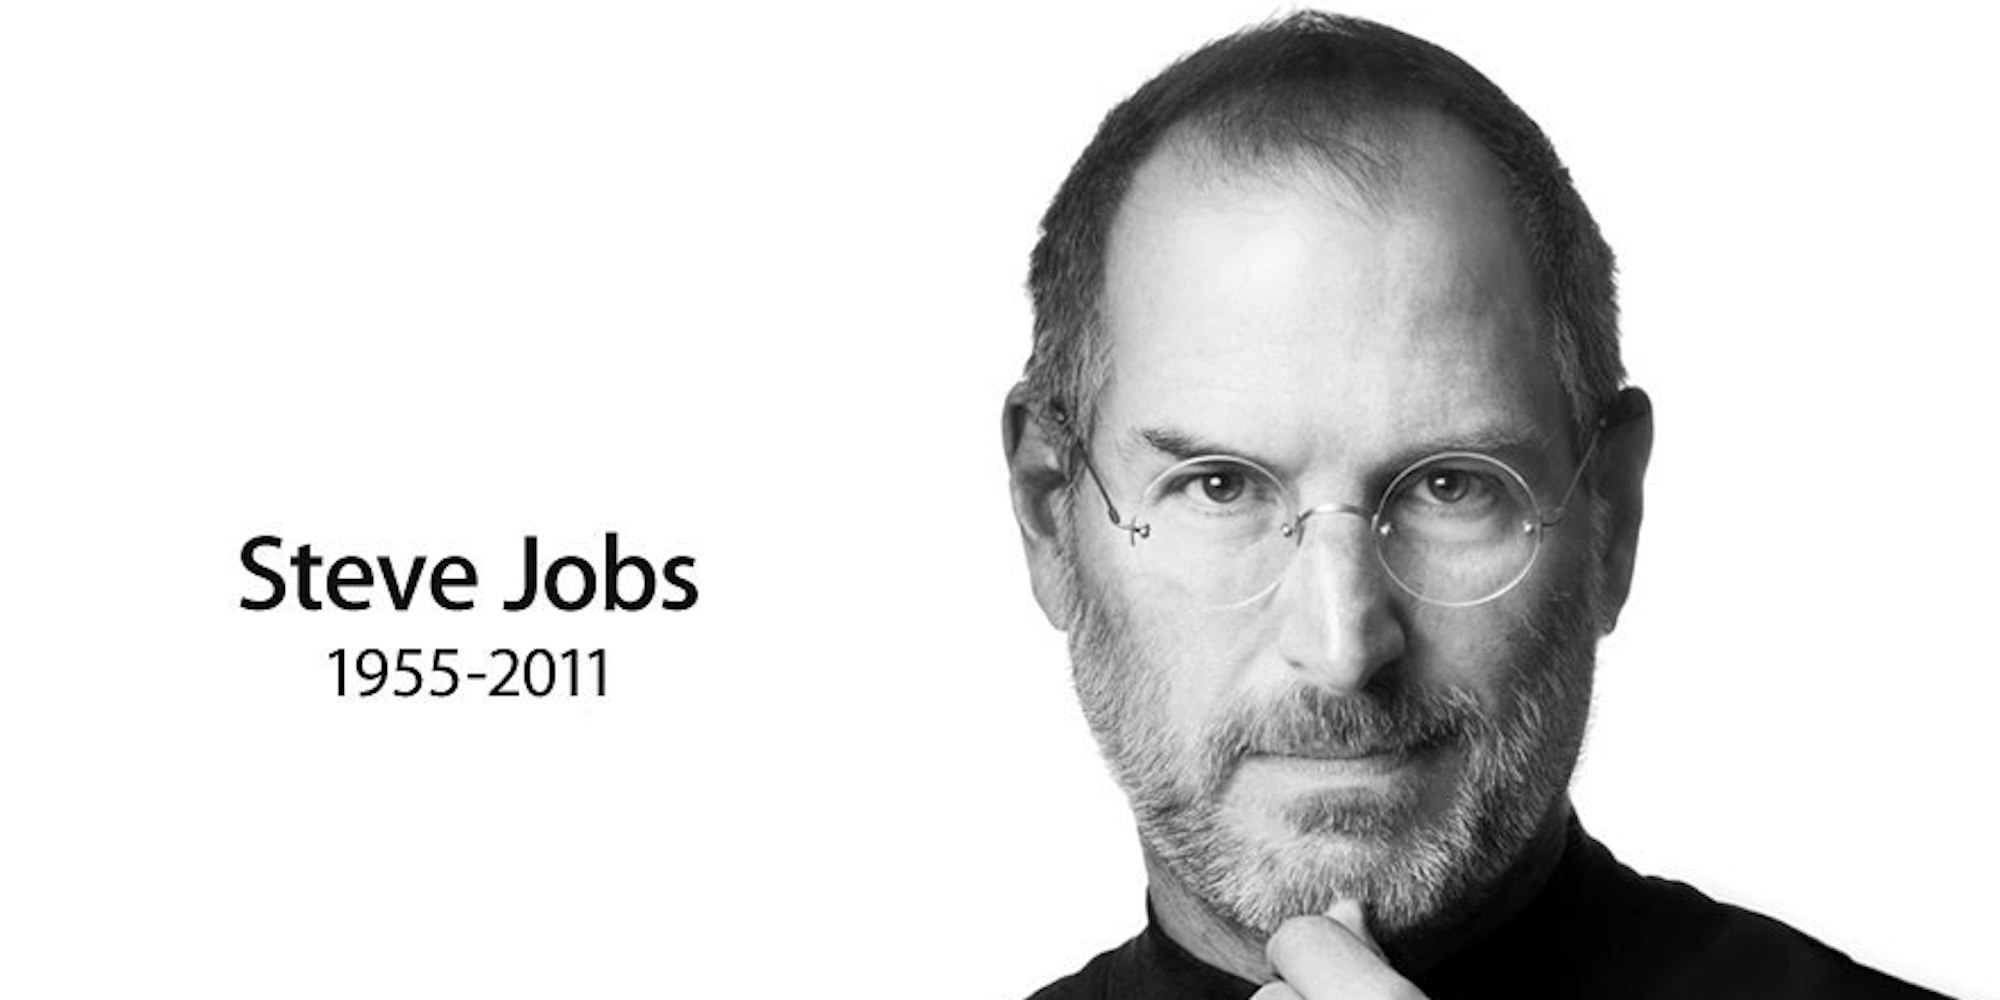 Steve Jobs ist tot. Er starb an Bauchspeicheldrüsenkrebs. Apple teilte mit: "In tiefer Trauer teilen wir mit, dass Steve Jobs heute gestorben ist."